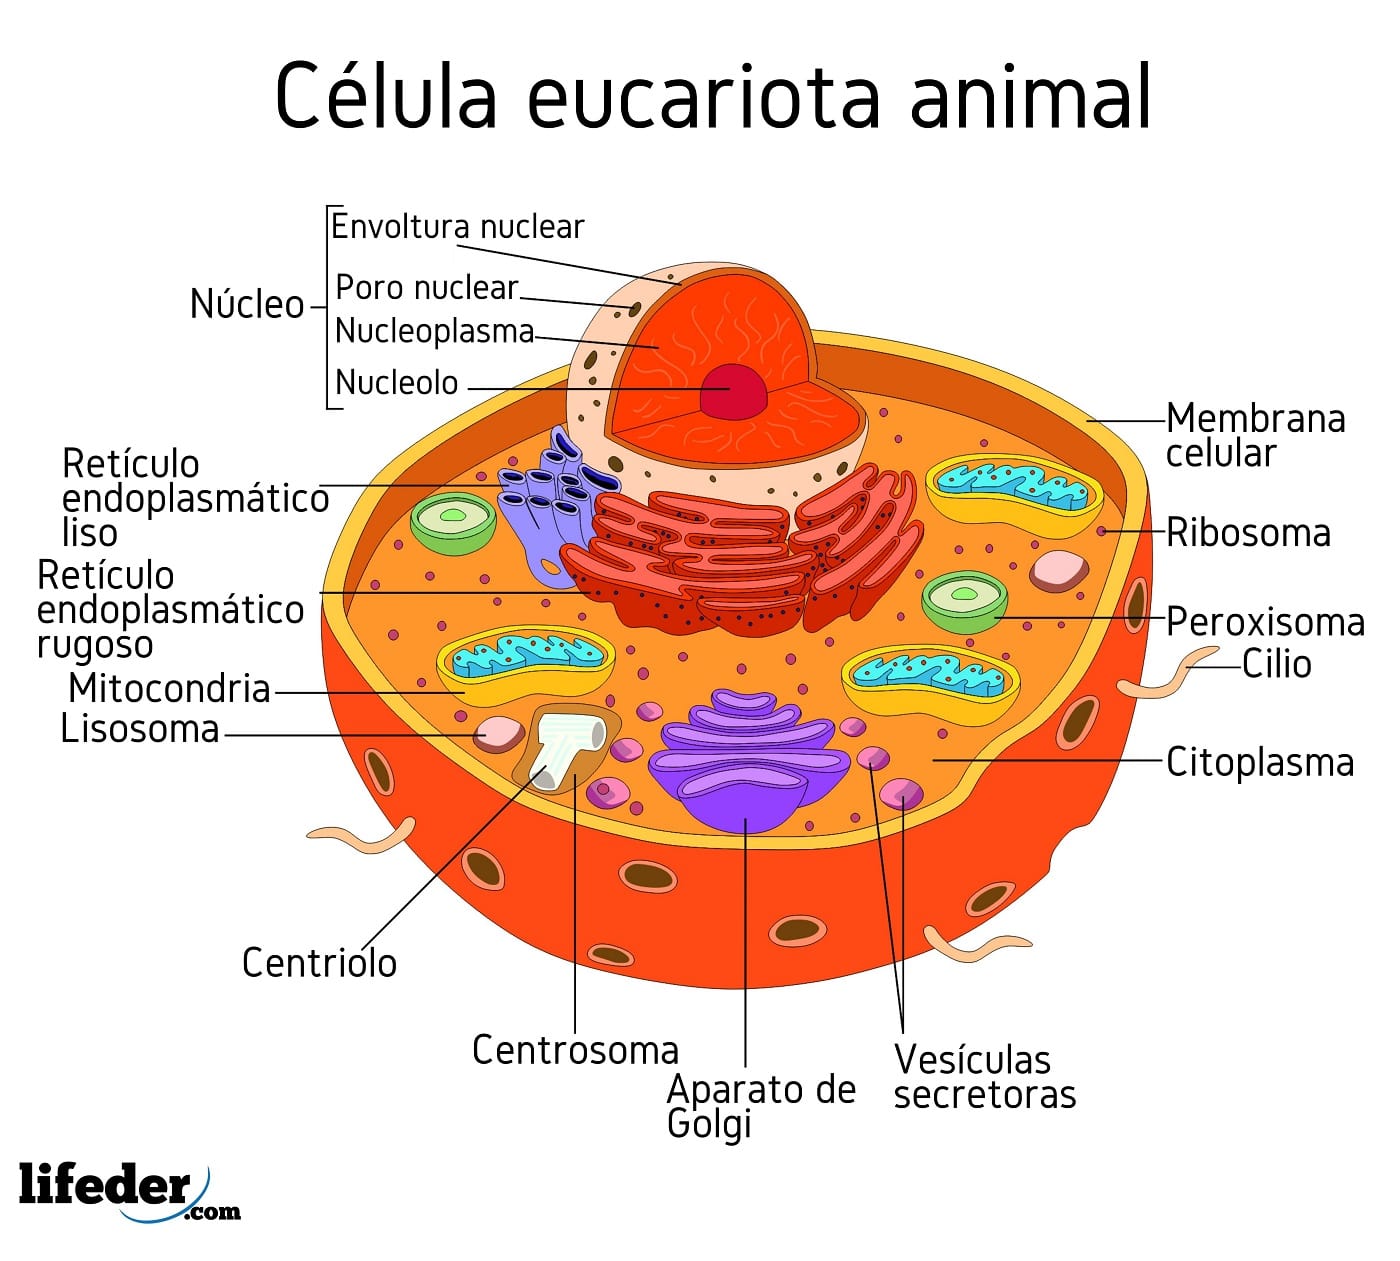 realiza un dibujo de la célula eucariota animal indicando sus partes ...